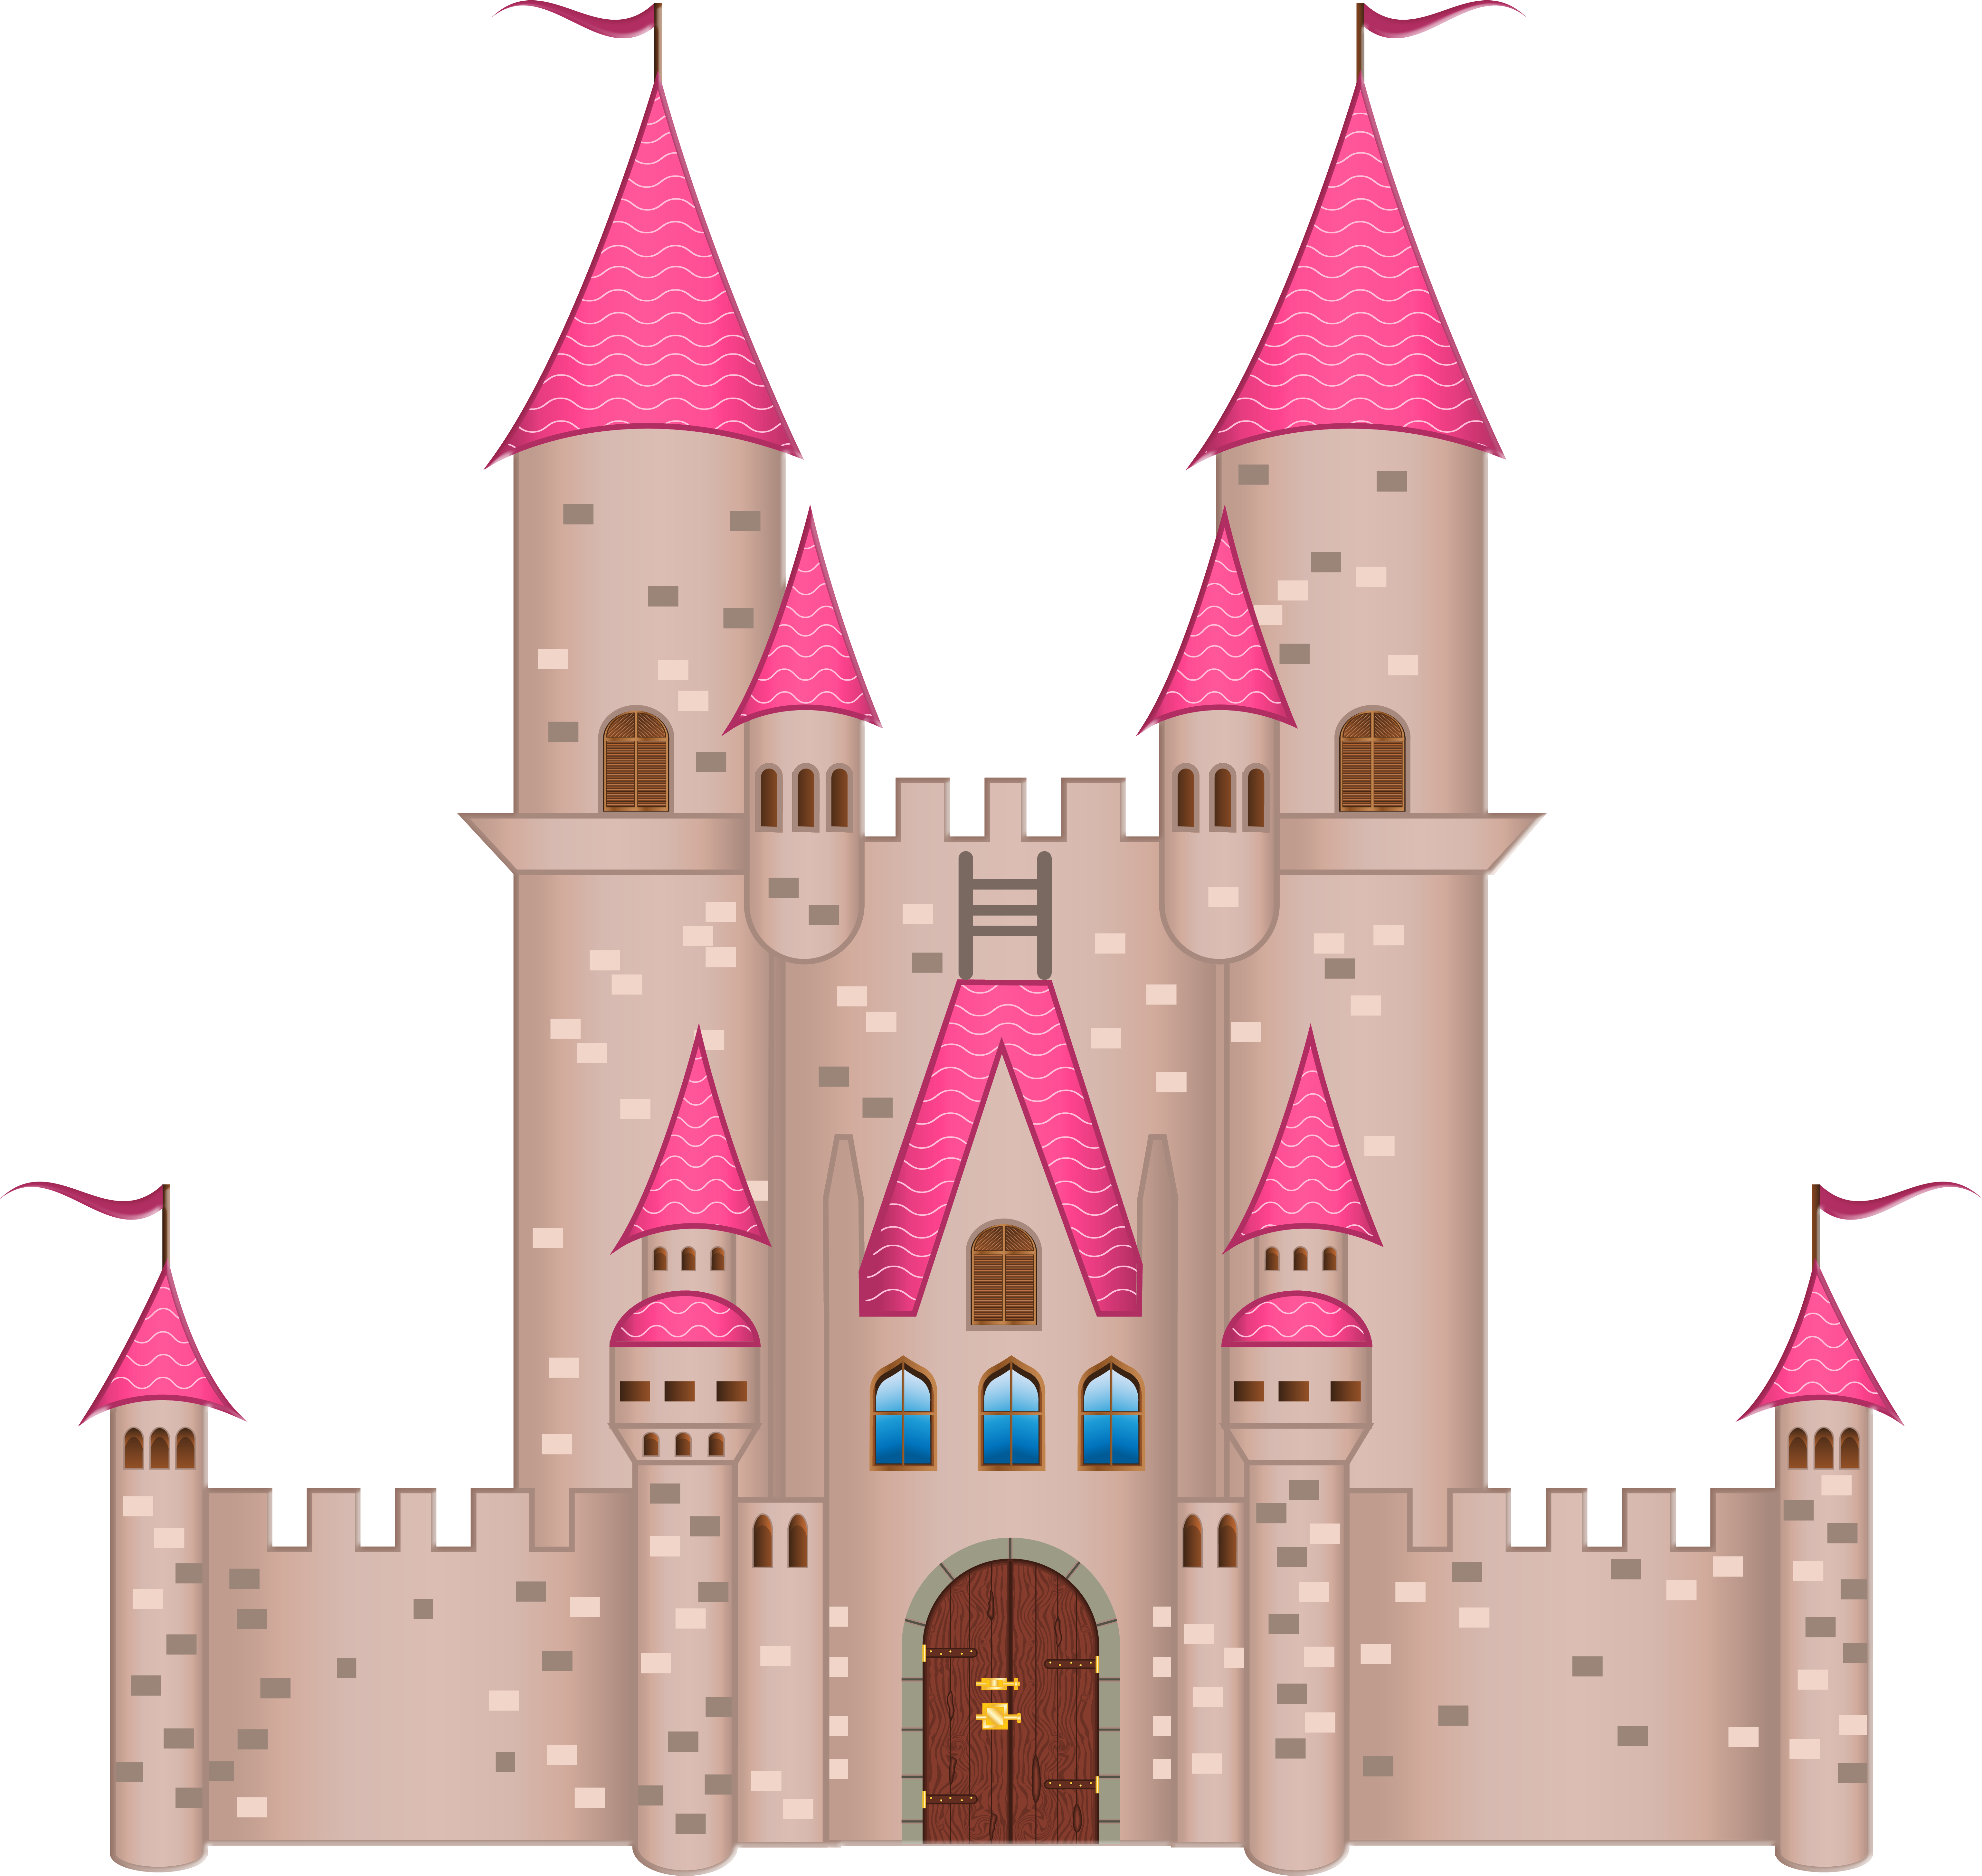 Imagen PNG del castillo de Disney